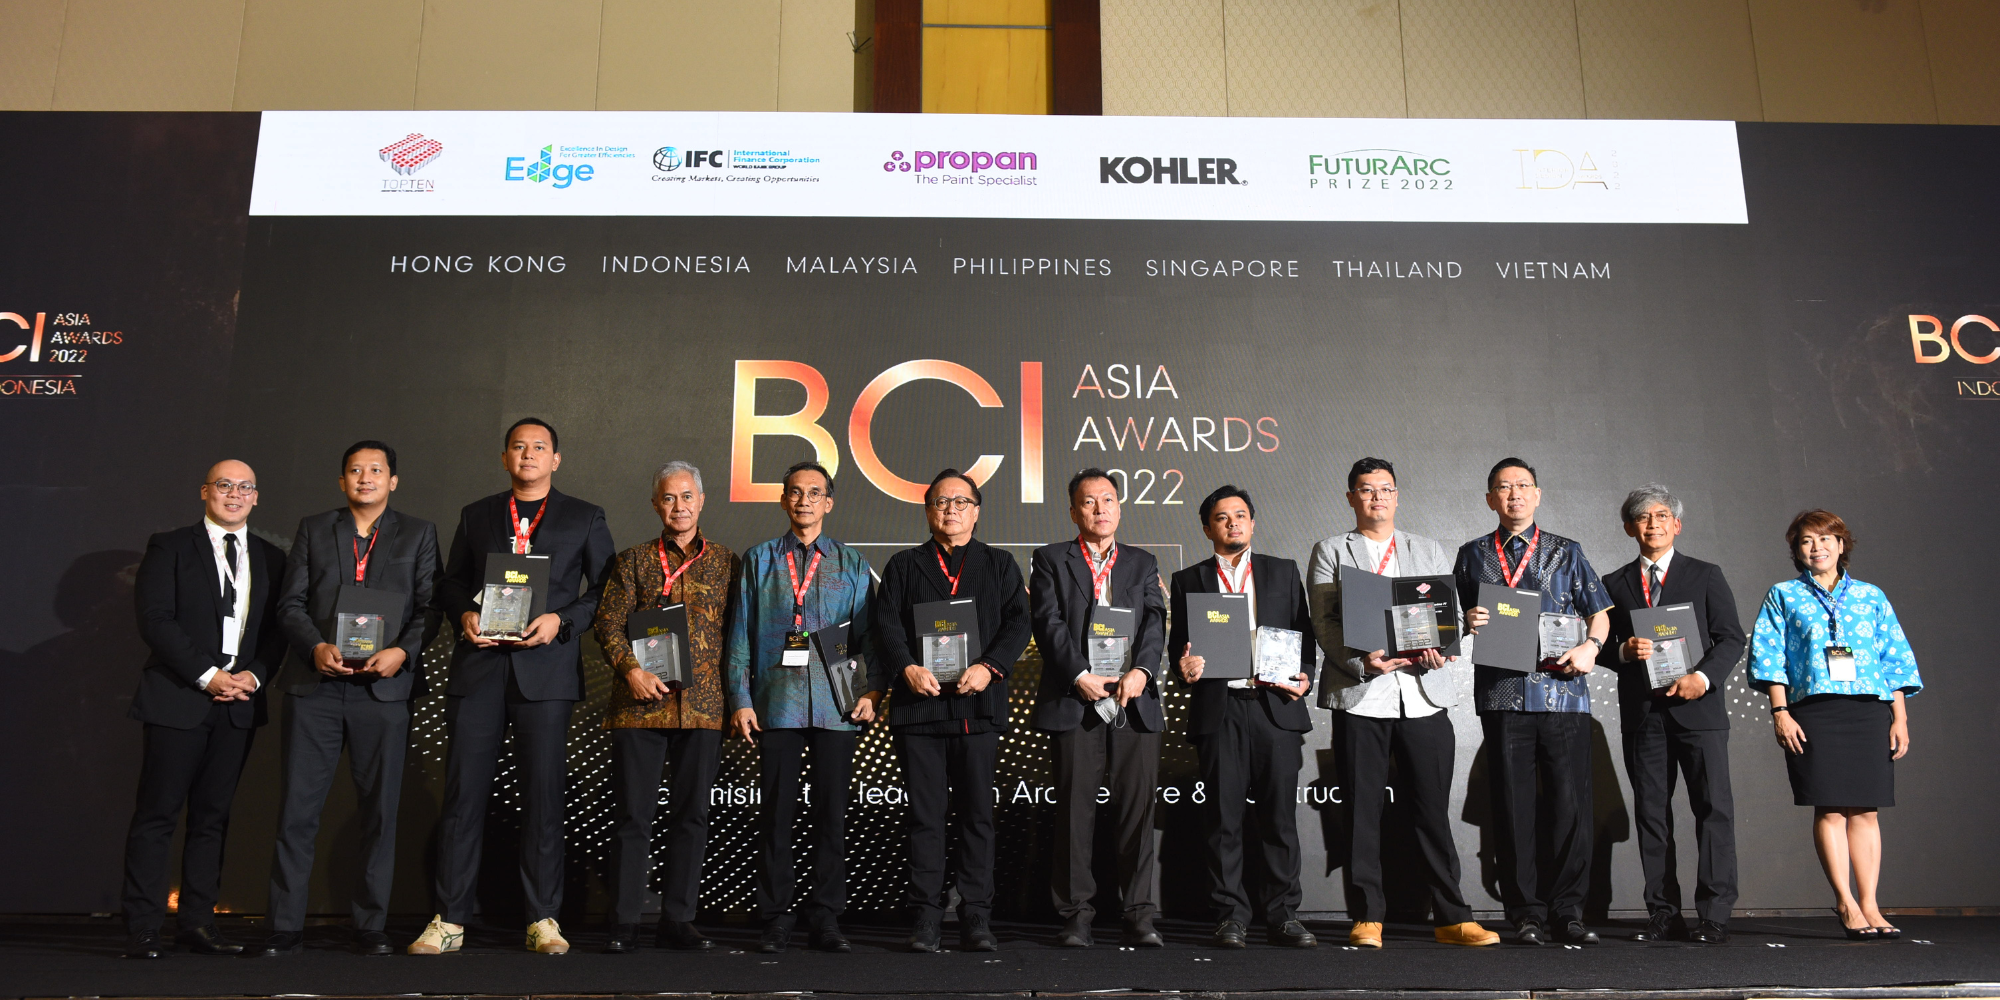 Hình ảnh nổi bật cho “BCI Asia Awards Indonesia 2022”